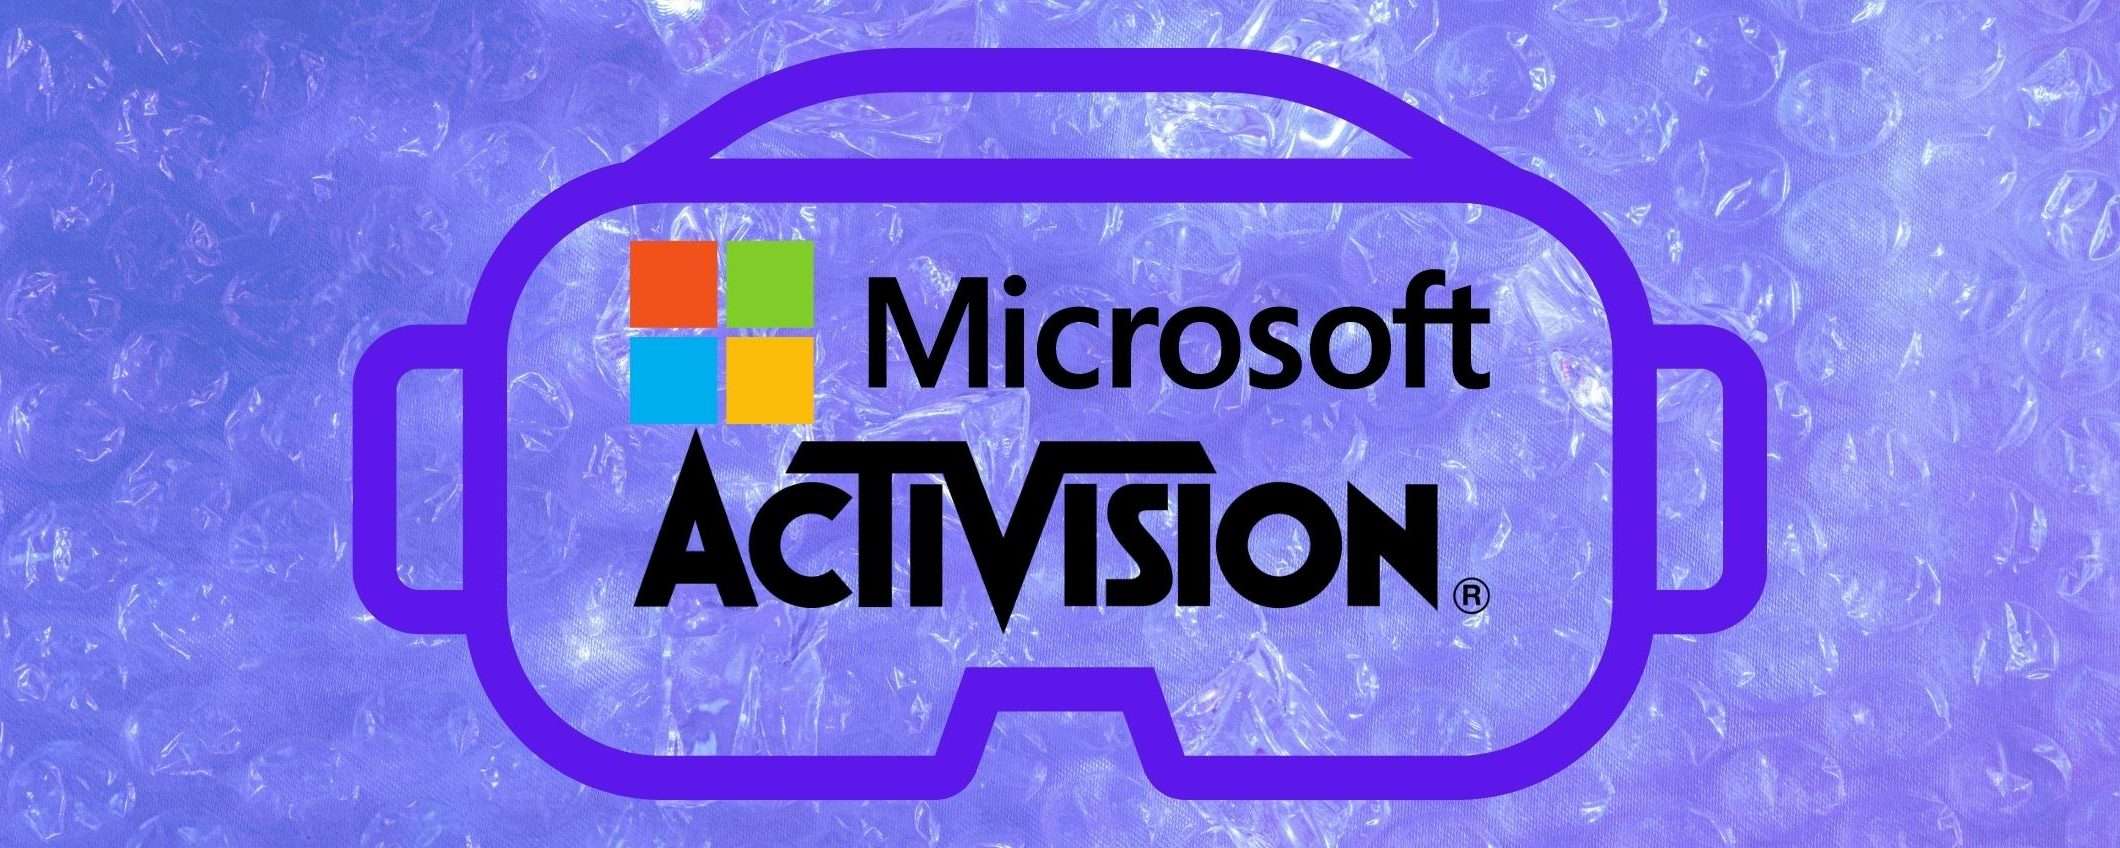 Microsoft acquistando Activision vuole entrare nel metaverso